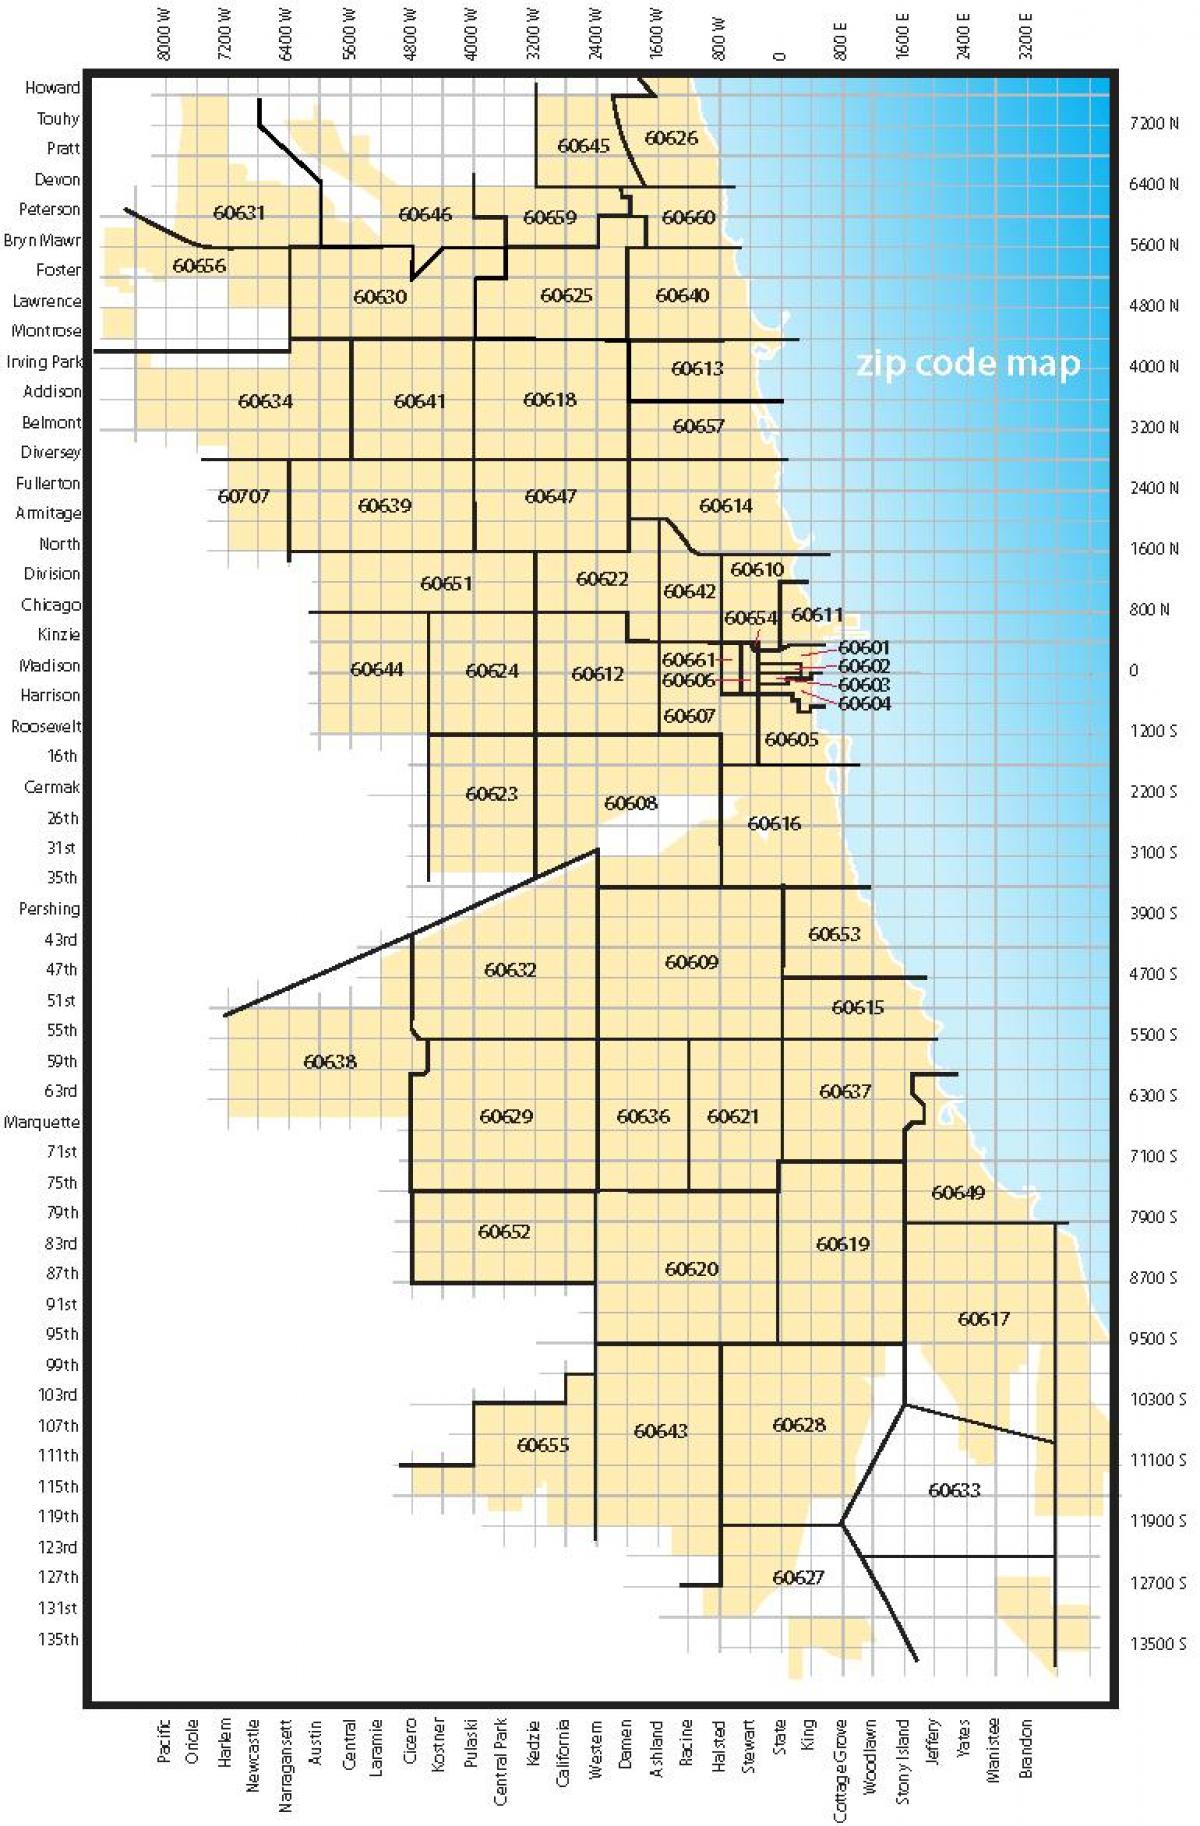 Chicago area code kaart